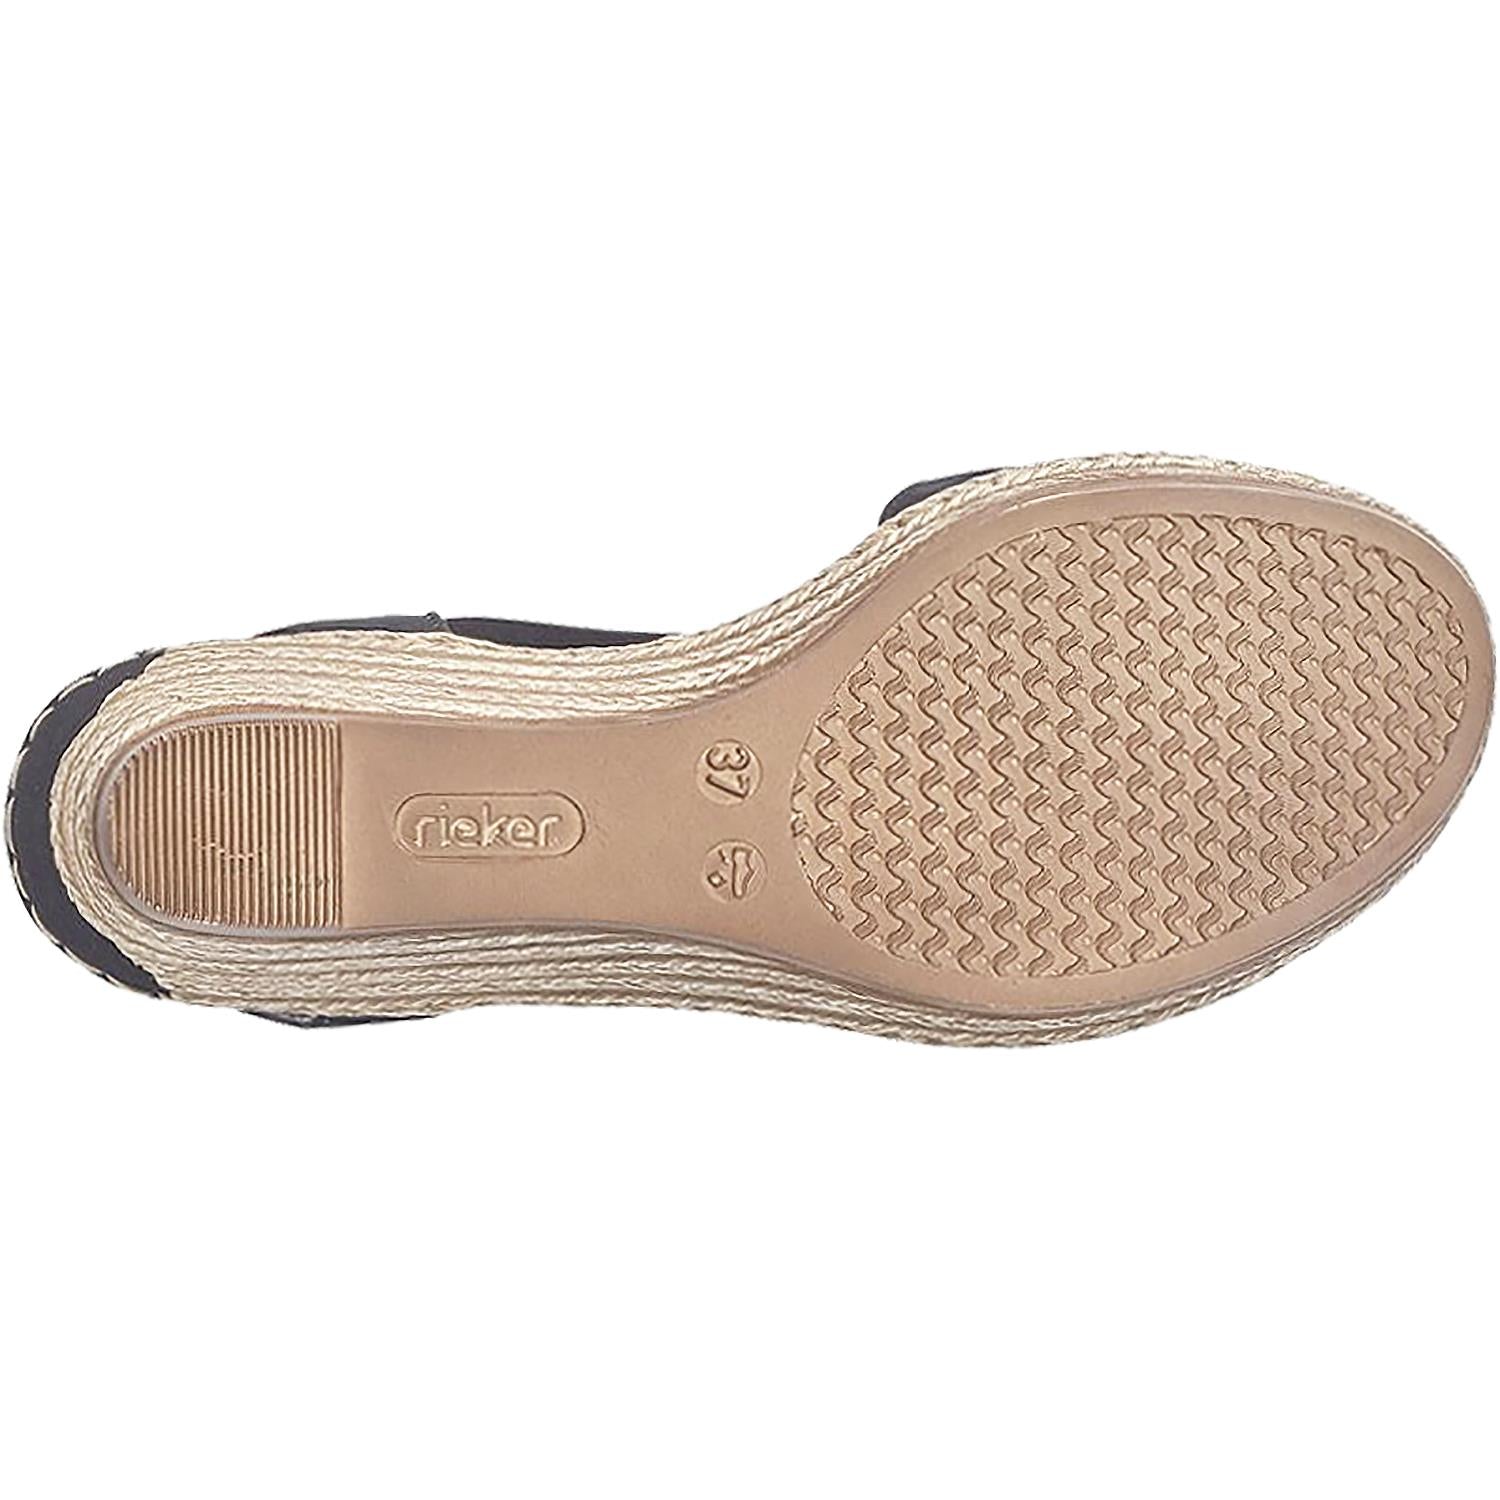 Rieker 62418 Fanni Women's Shoe